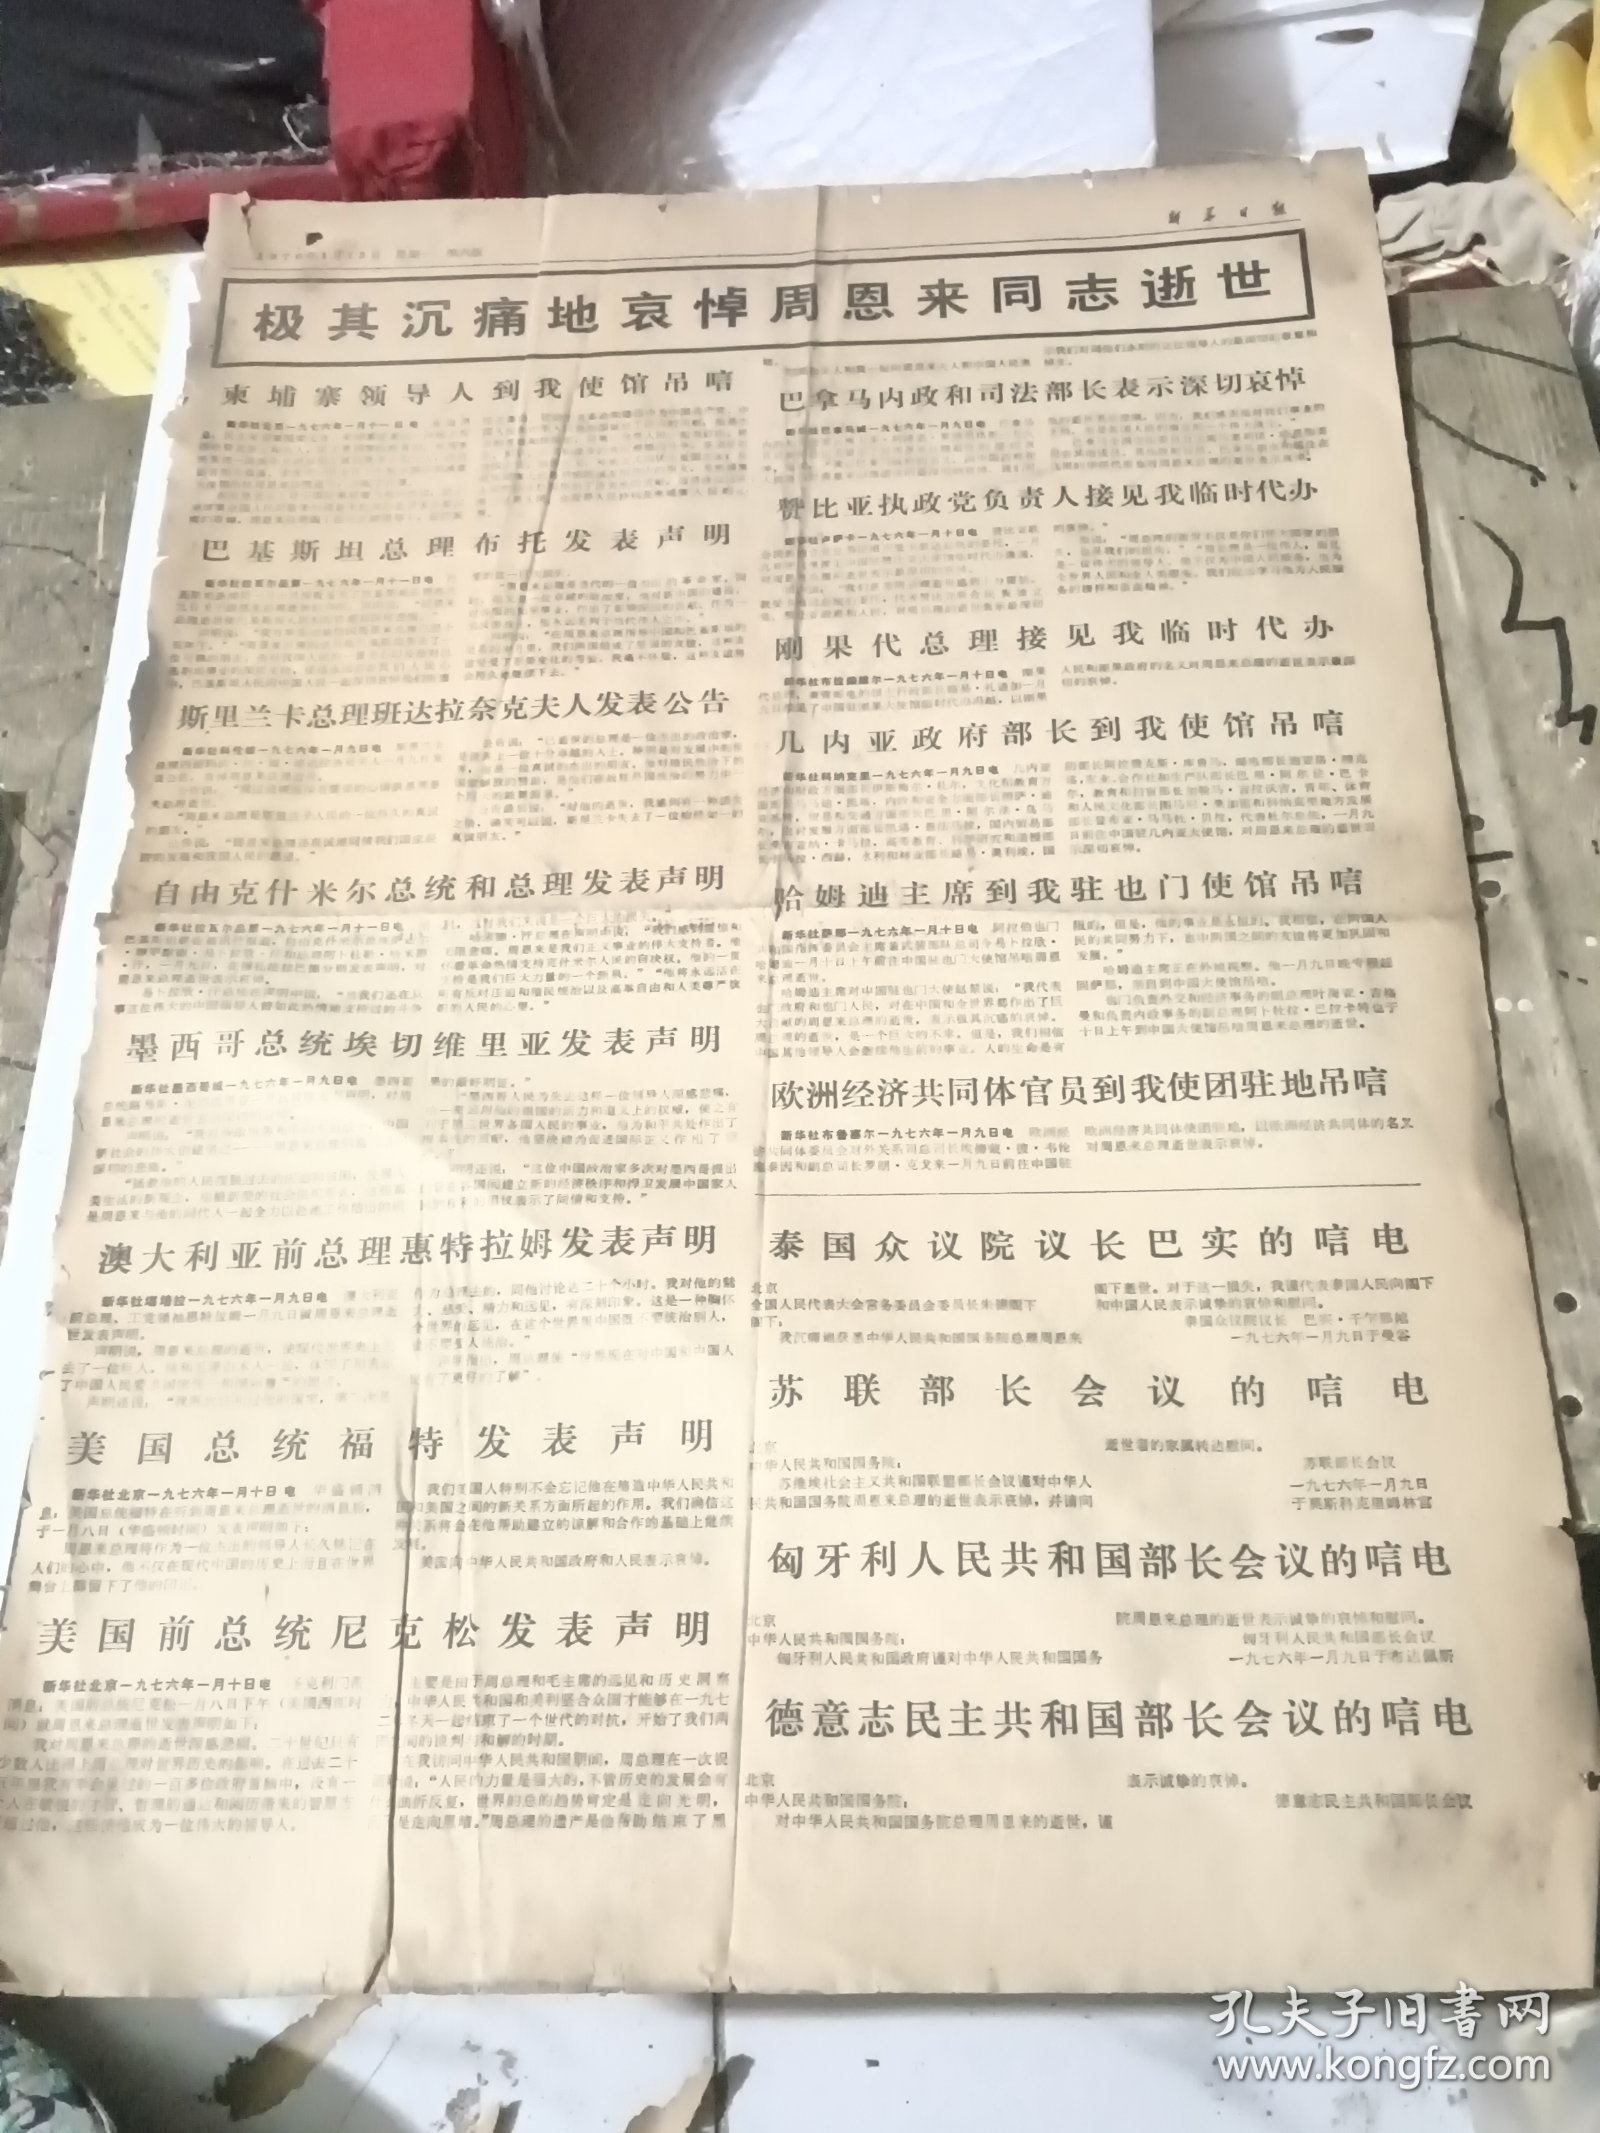 新华日报1976年1月12日 只有一页